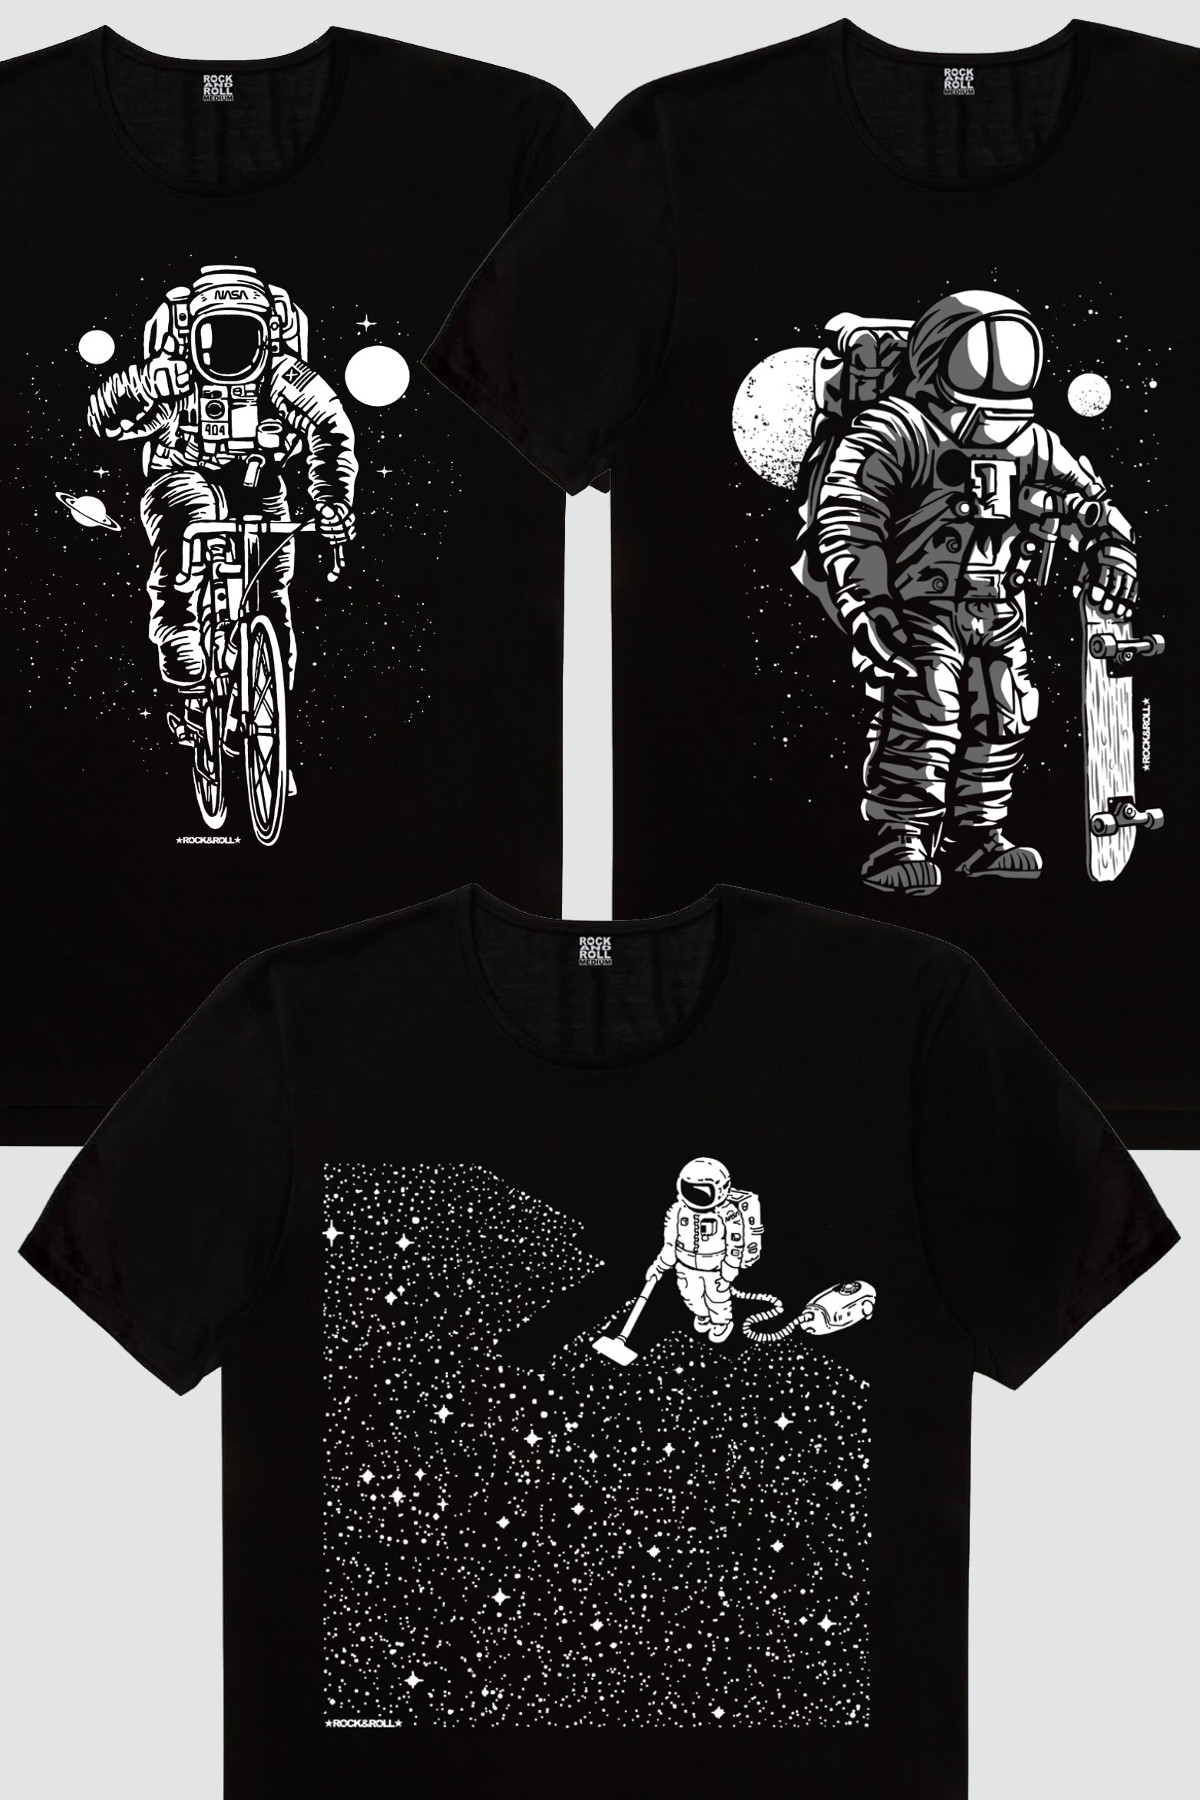 Bisikletli Astronot, Süpürgeli Astronot, Kaykaycı Astronot Erkek 3'lü Eko Paket T-shirt